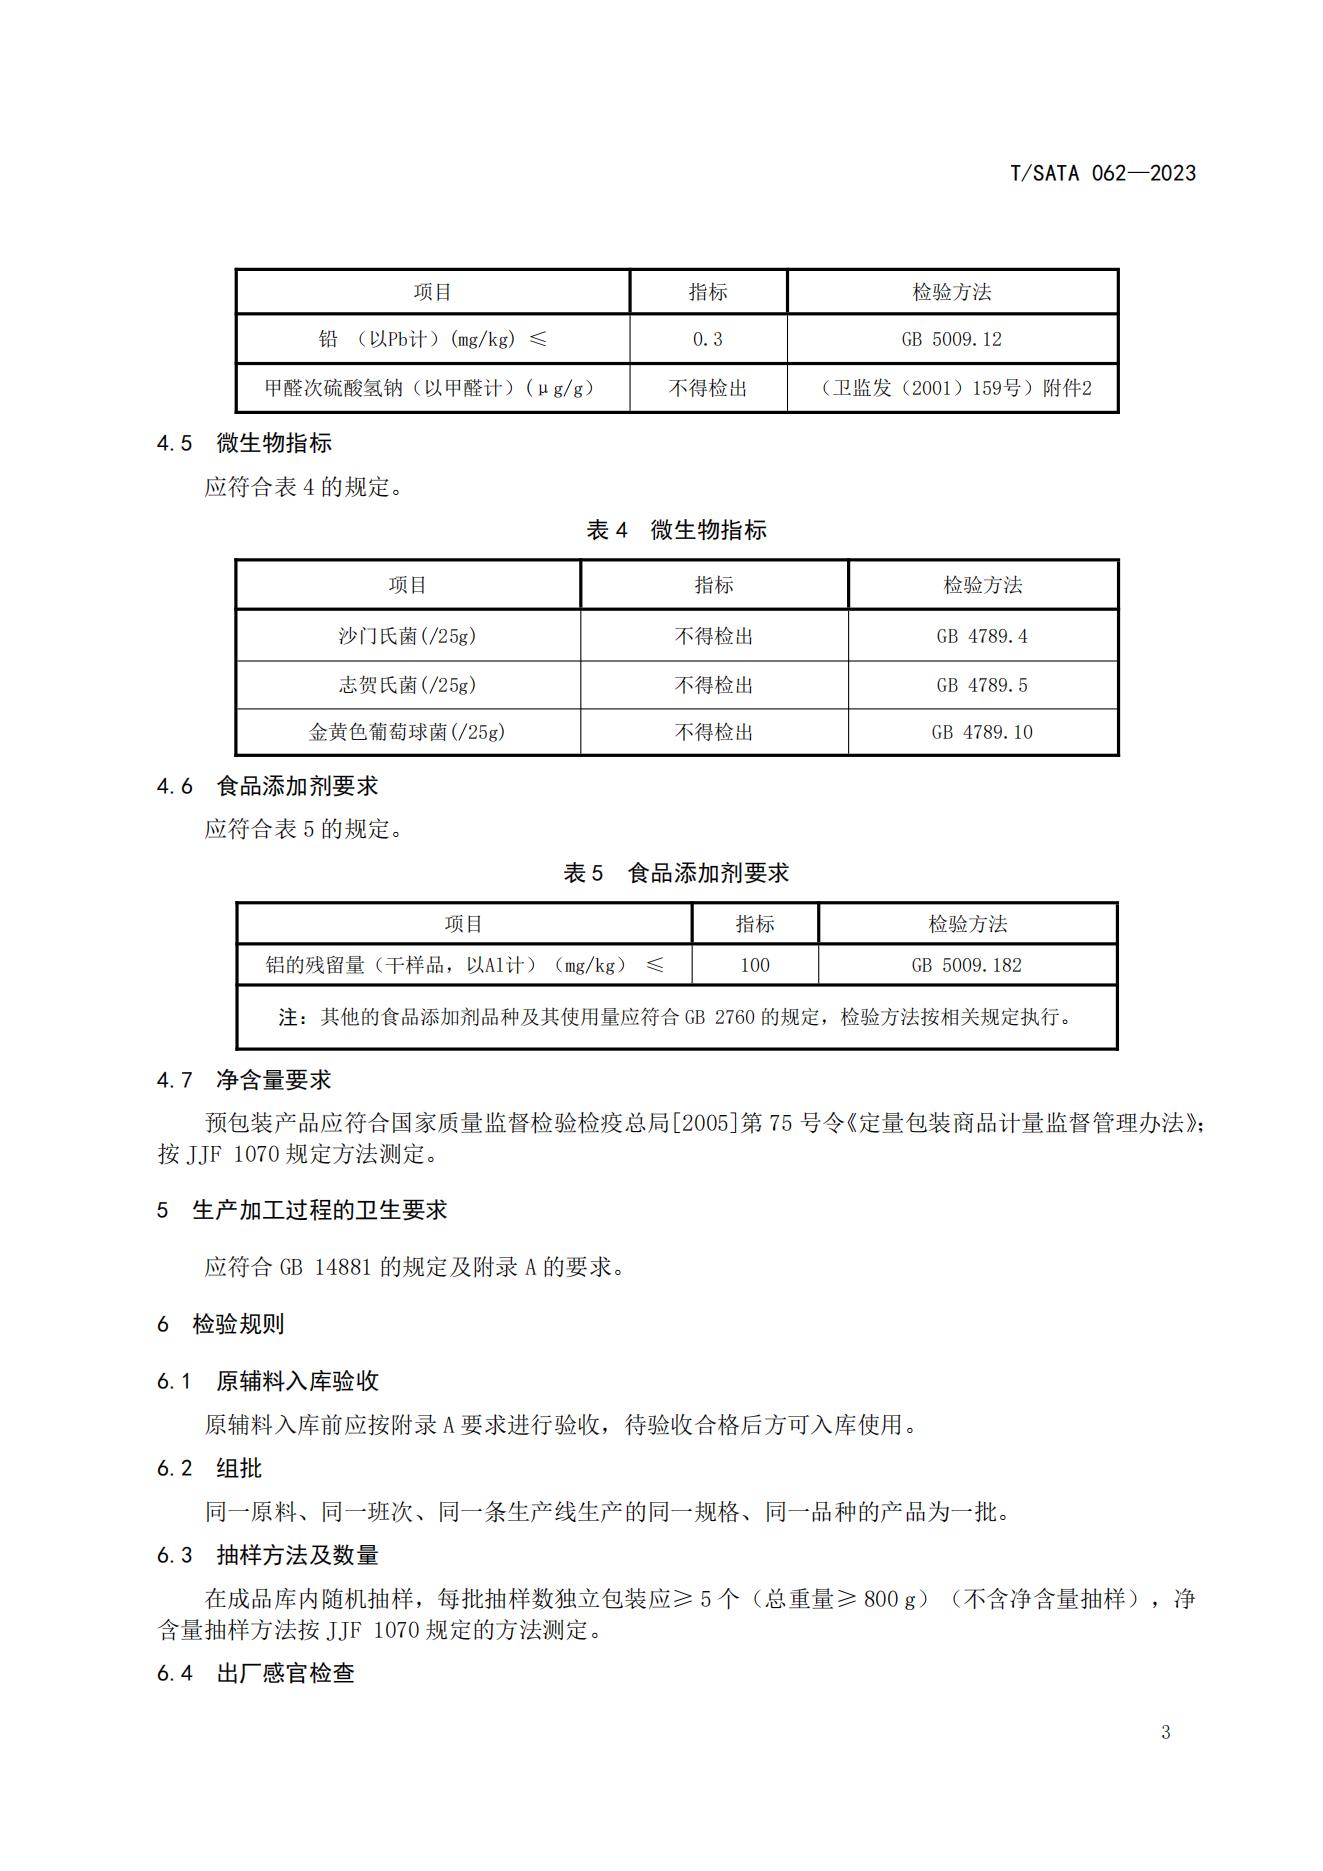 TSATA 062-2023标准文本-小作坊食品  非发酵豆制品（豆腐、豆腐干）_06.jpg